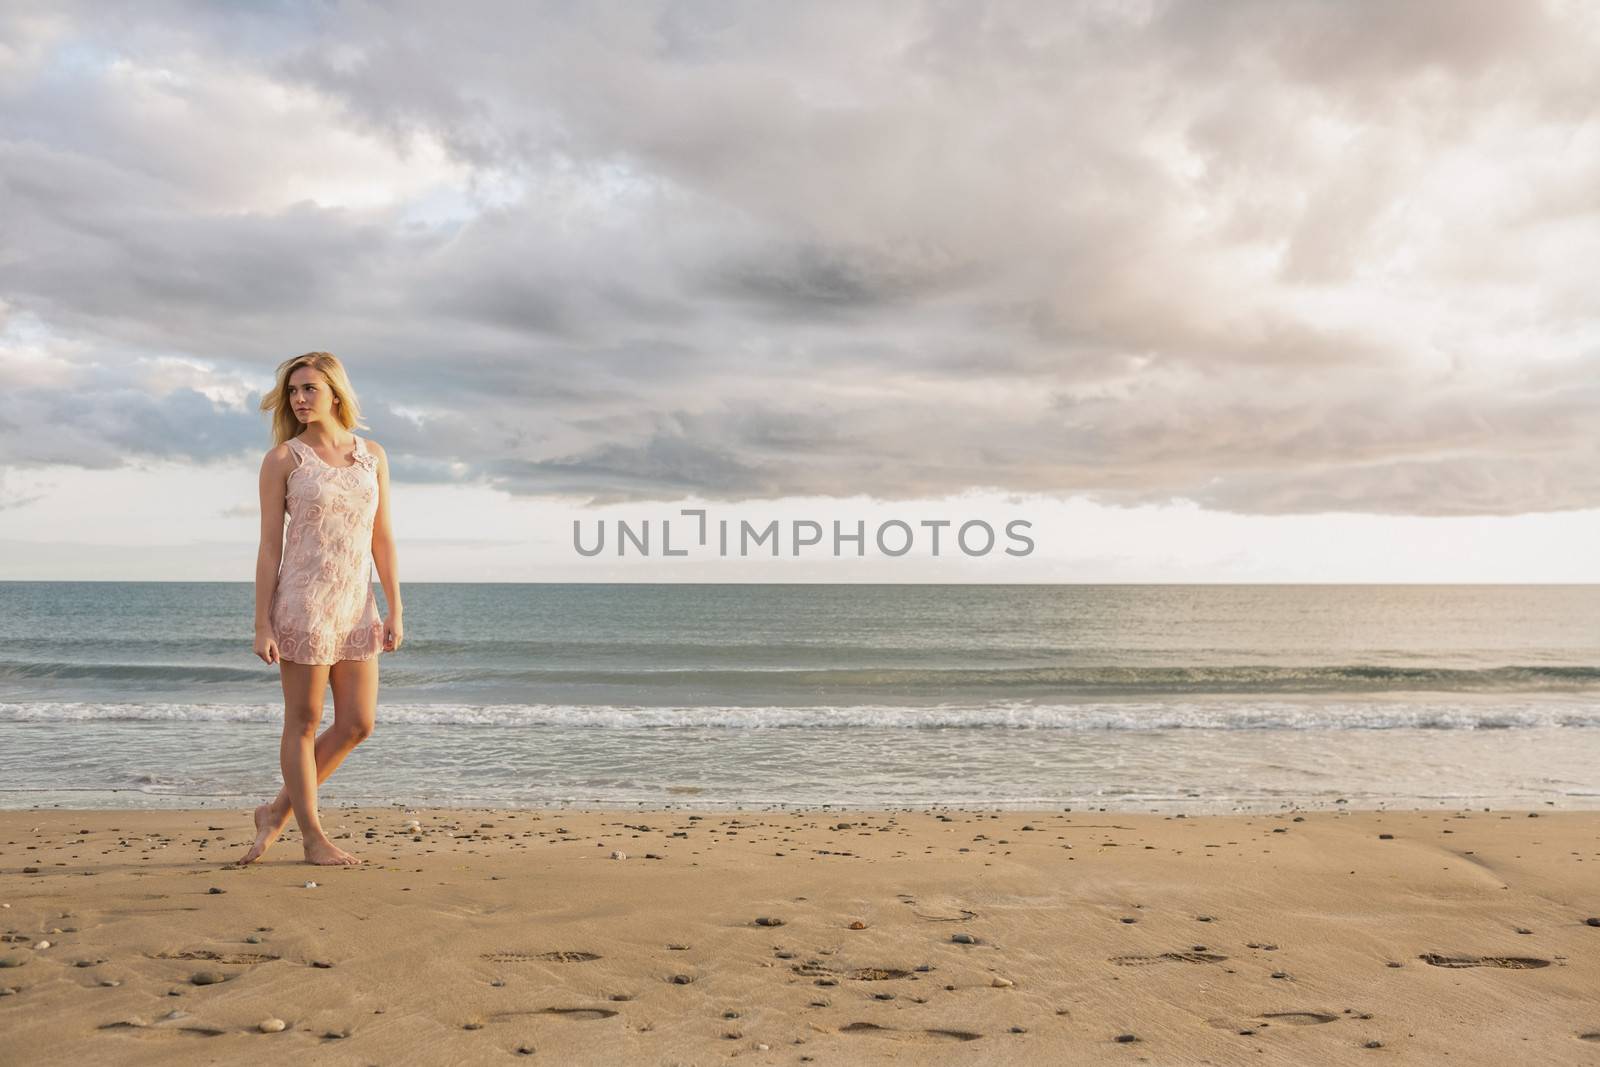 Woman in summer dress walking on beach by Wavebreakmedia